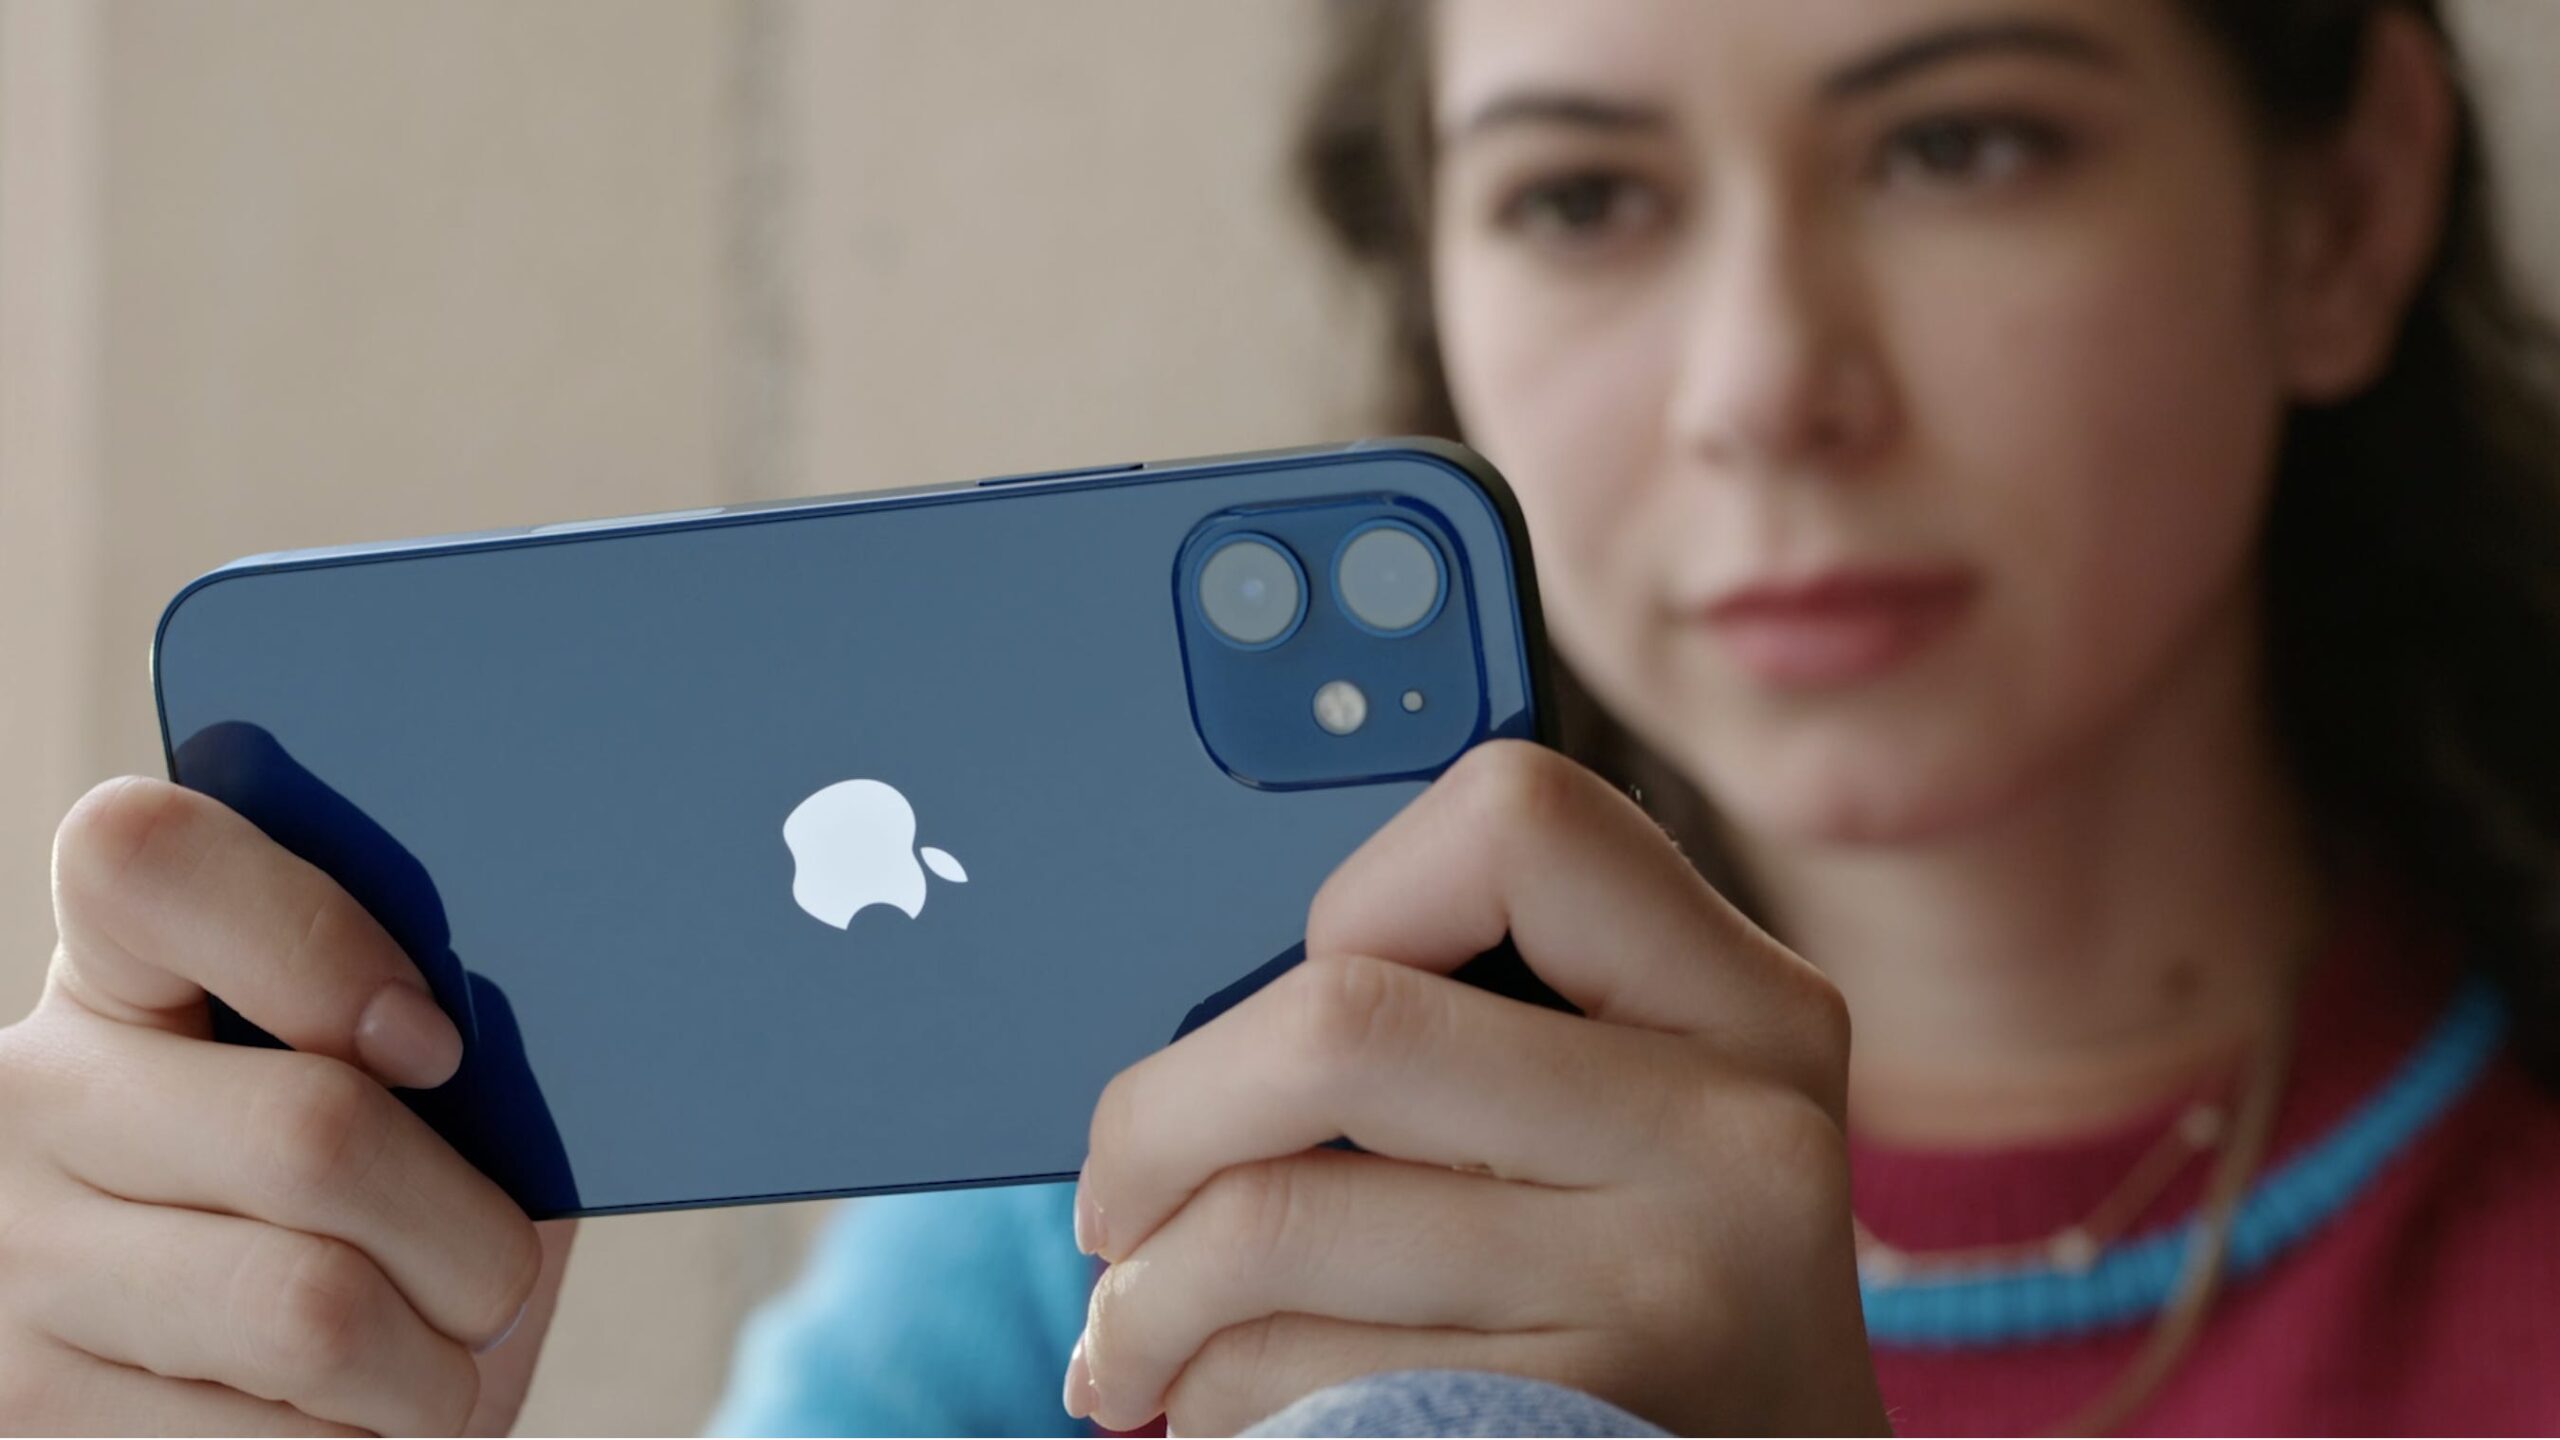 Mavi renkli iPhone 12 kutu açılış videosu sızdırıldı!